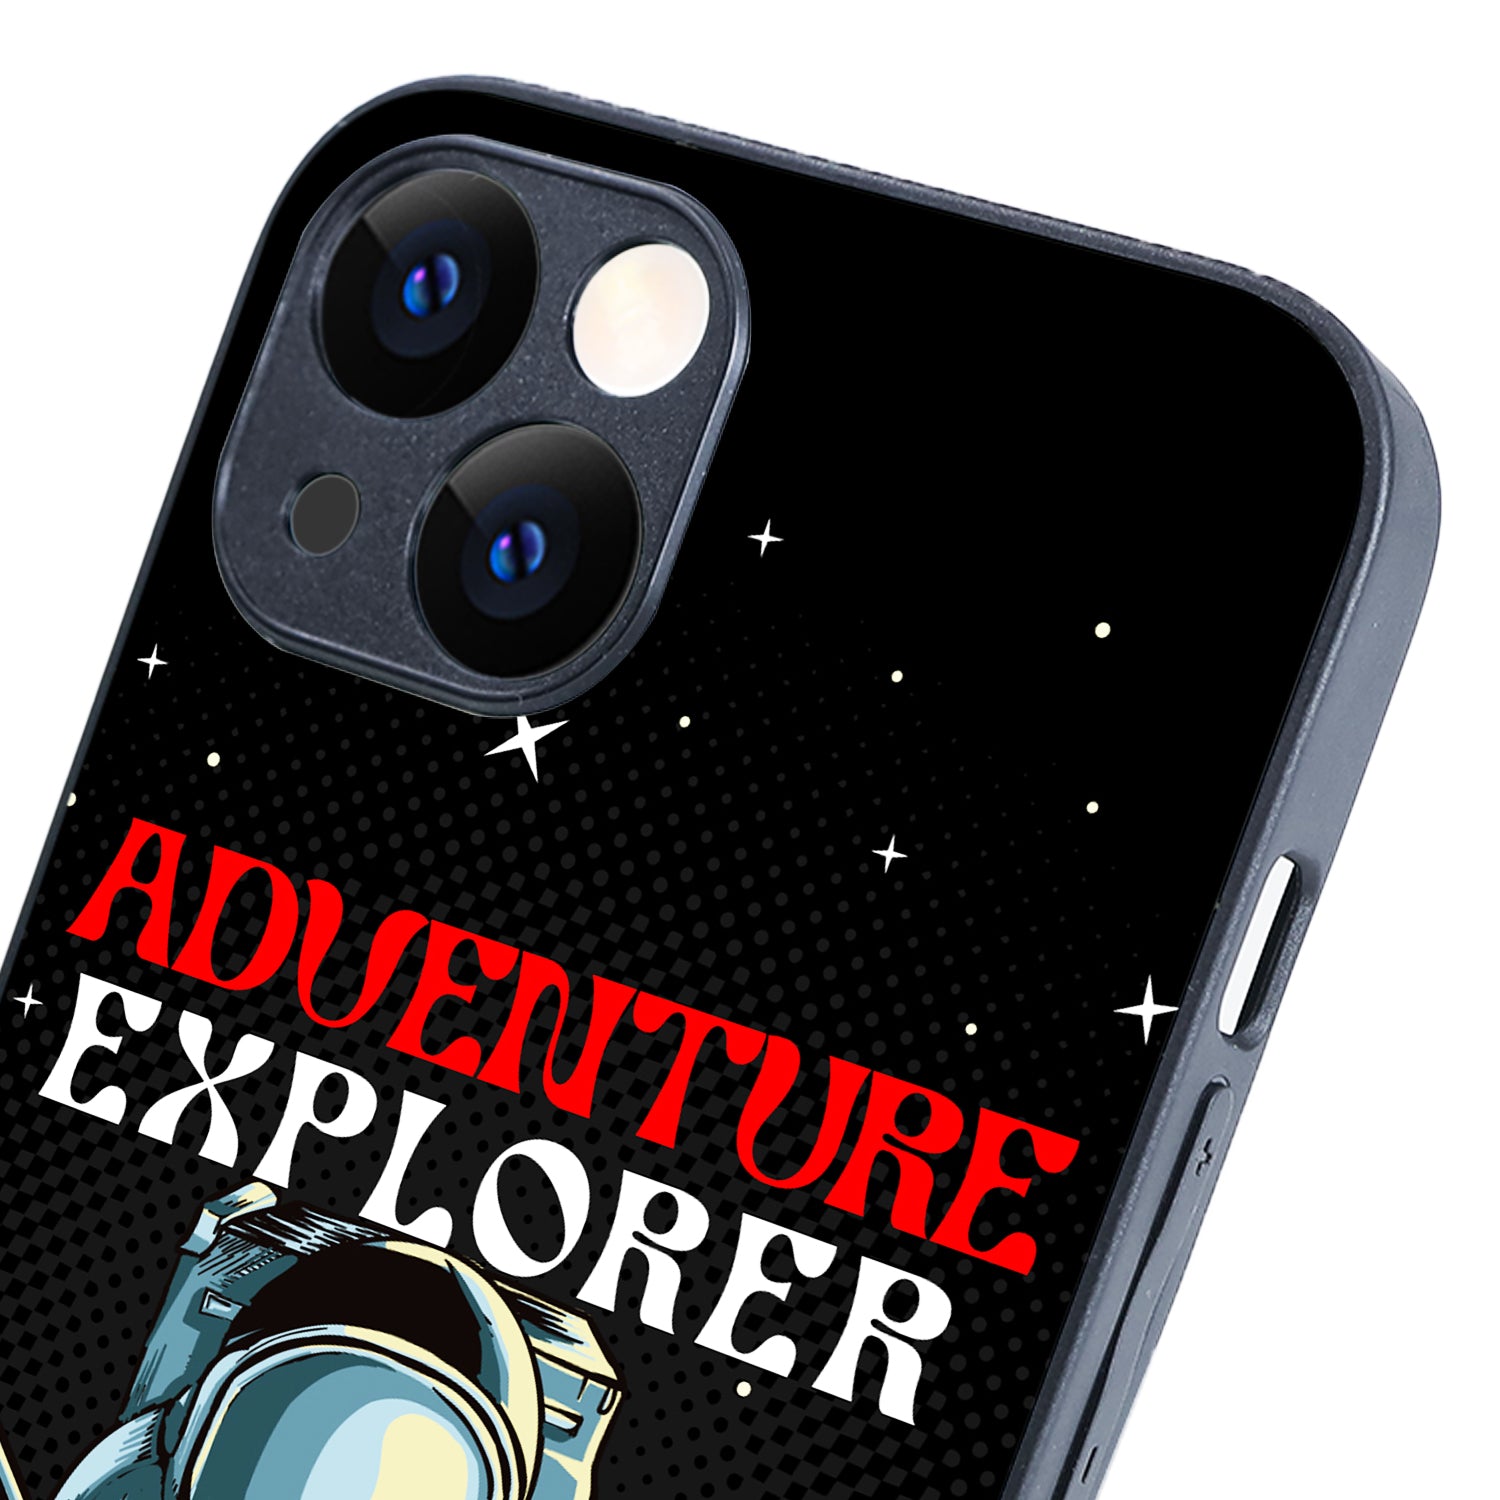 Adventure Explorer Space iPhone 13 Case